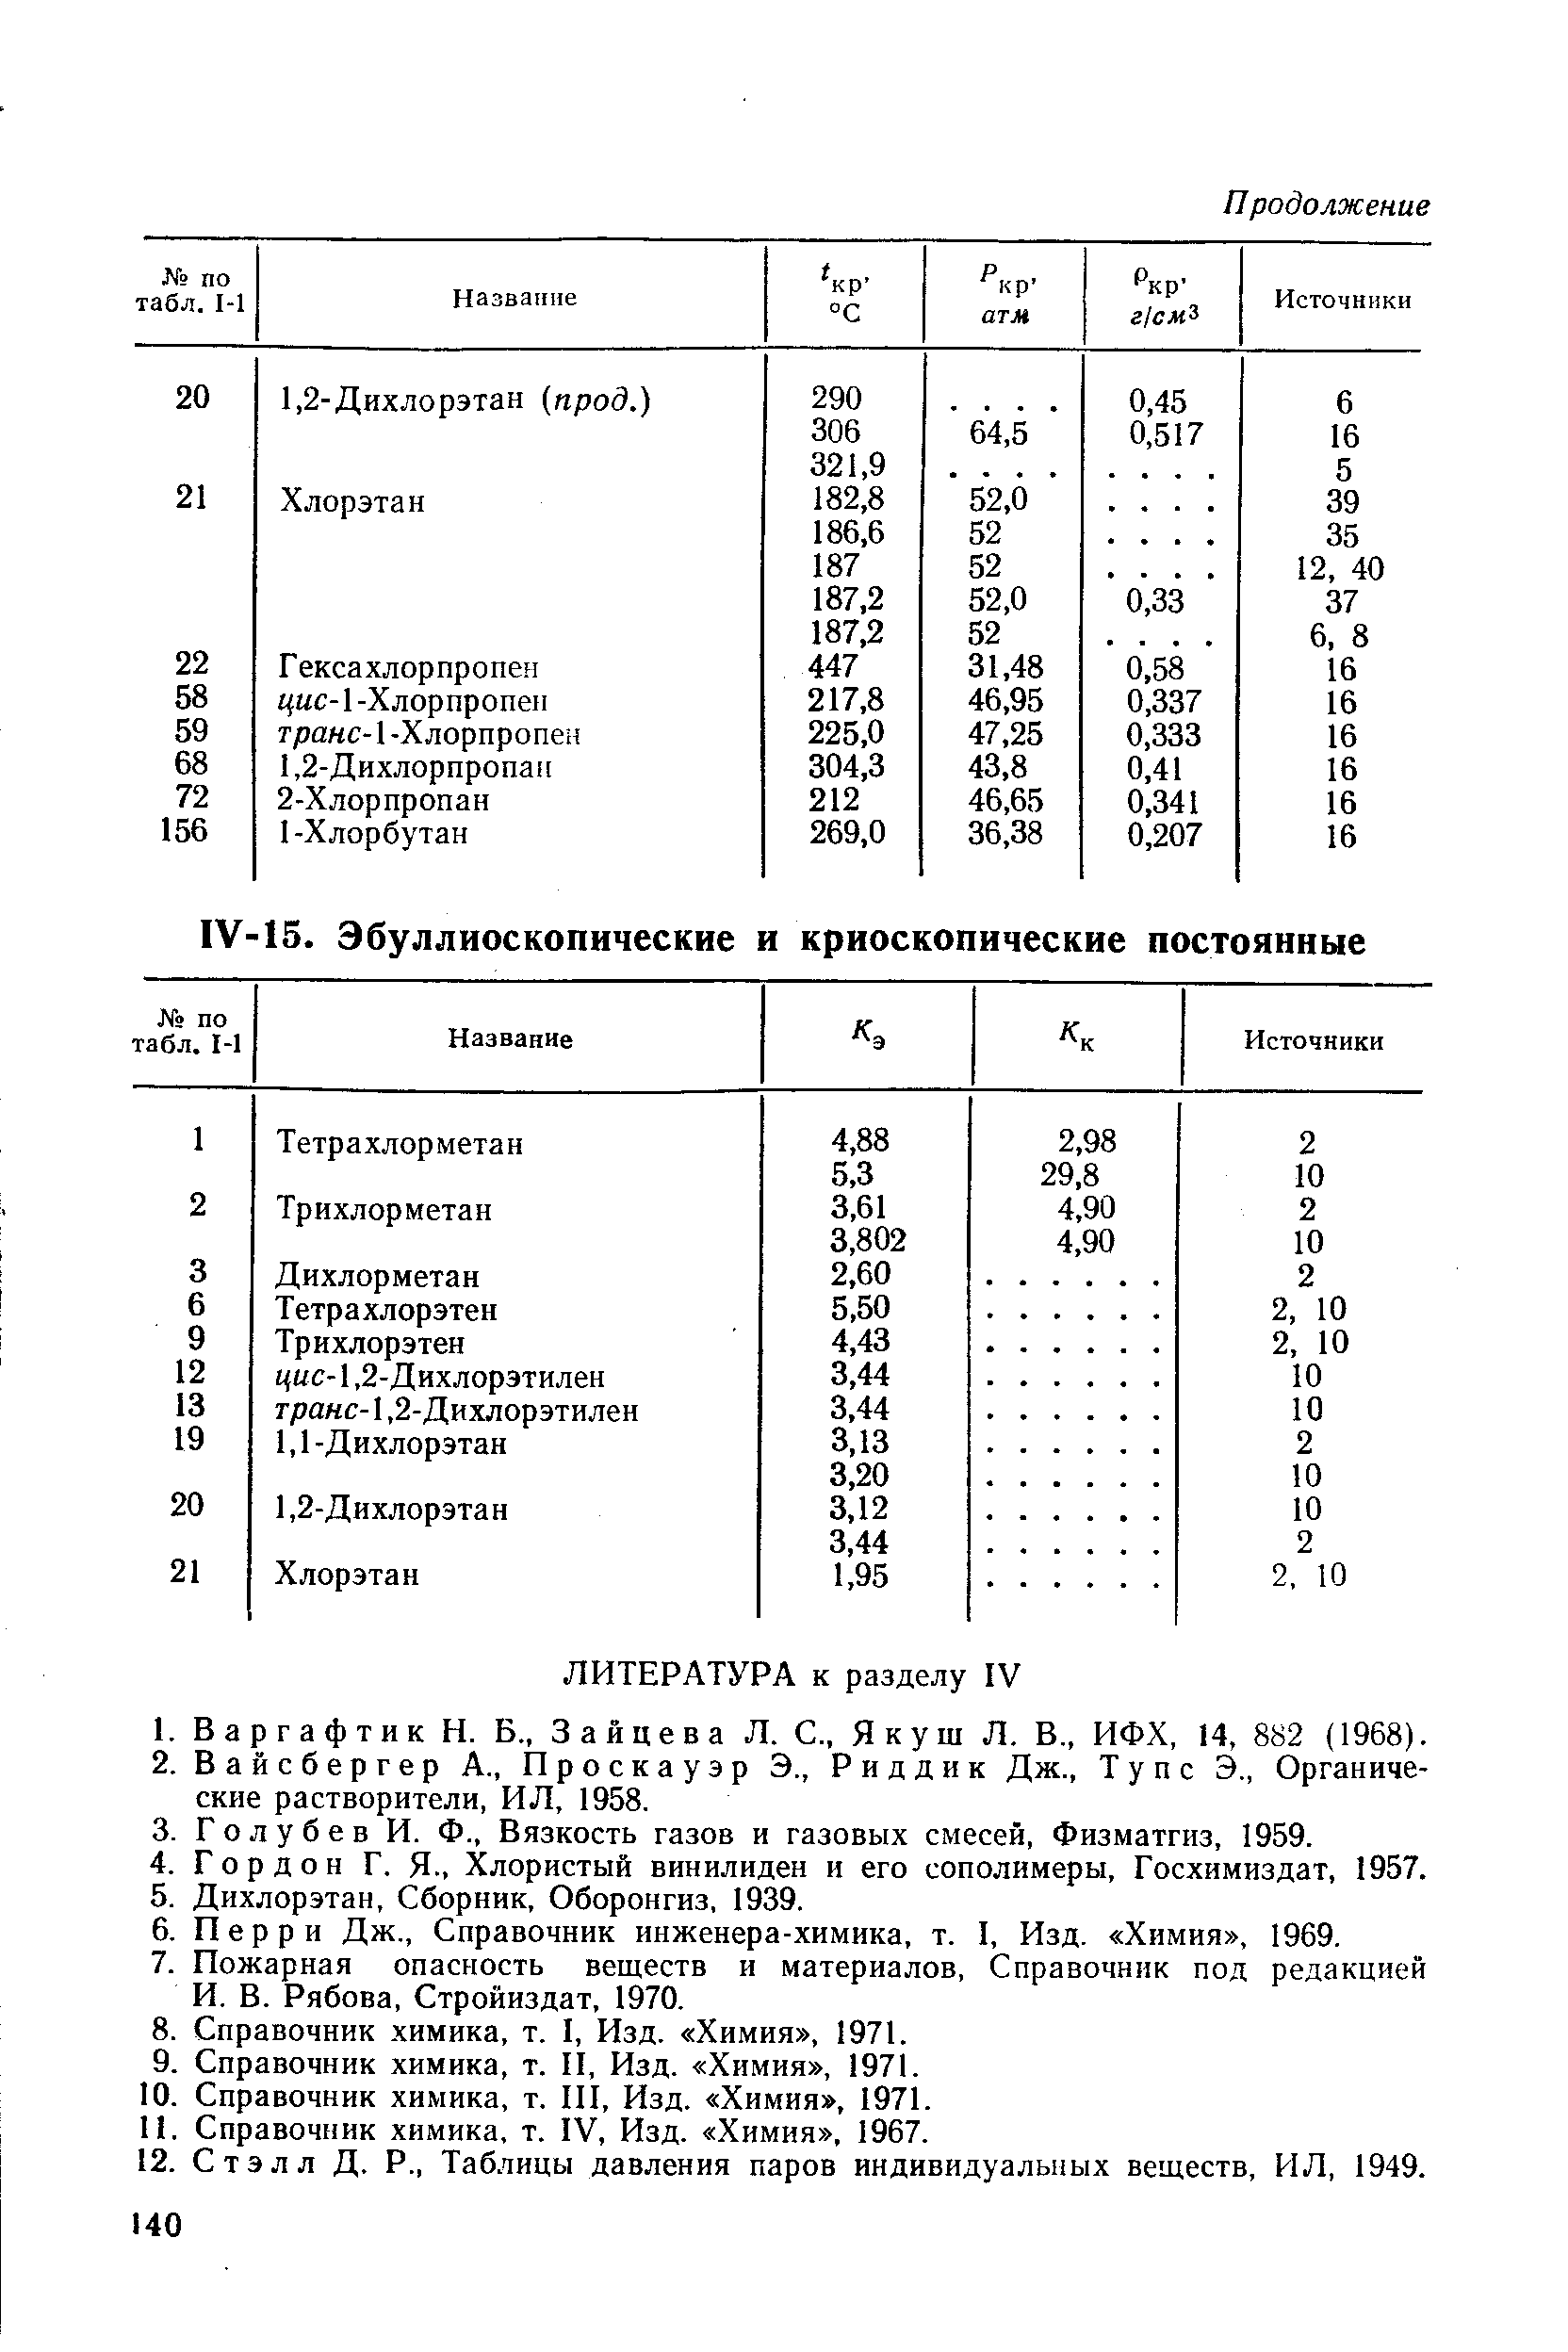 Справочник химика, т. IV, Изд. Химия , 1967.